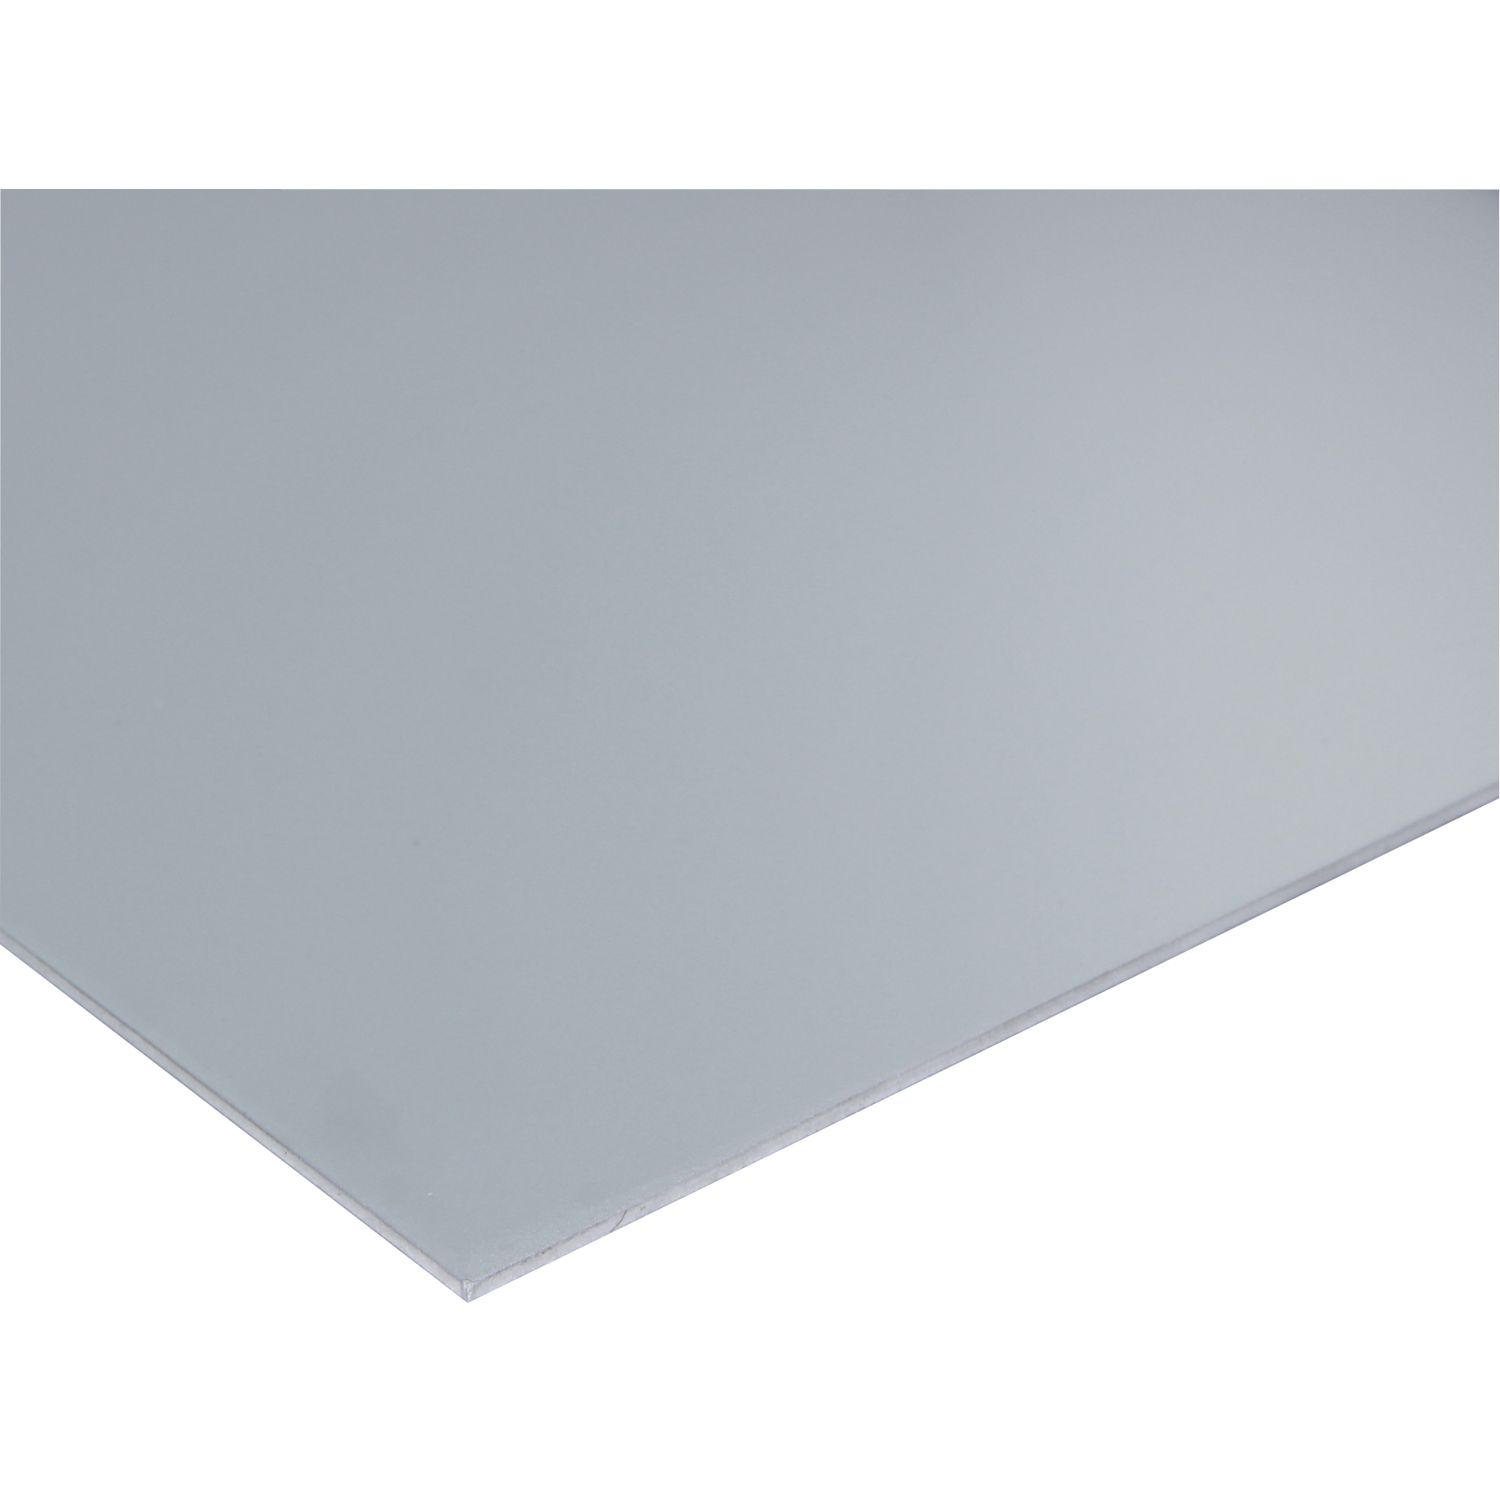 Aluminiumblech AlMg1 (5005) Eloxiert E6/EV1 H14/24 + Folie 3000/1500/1,5 mm